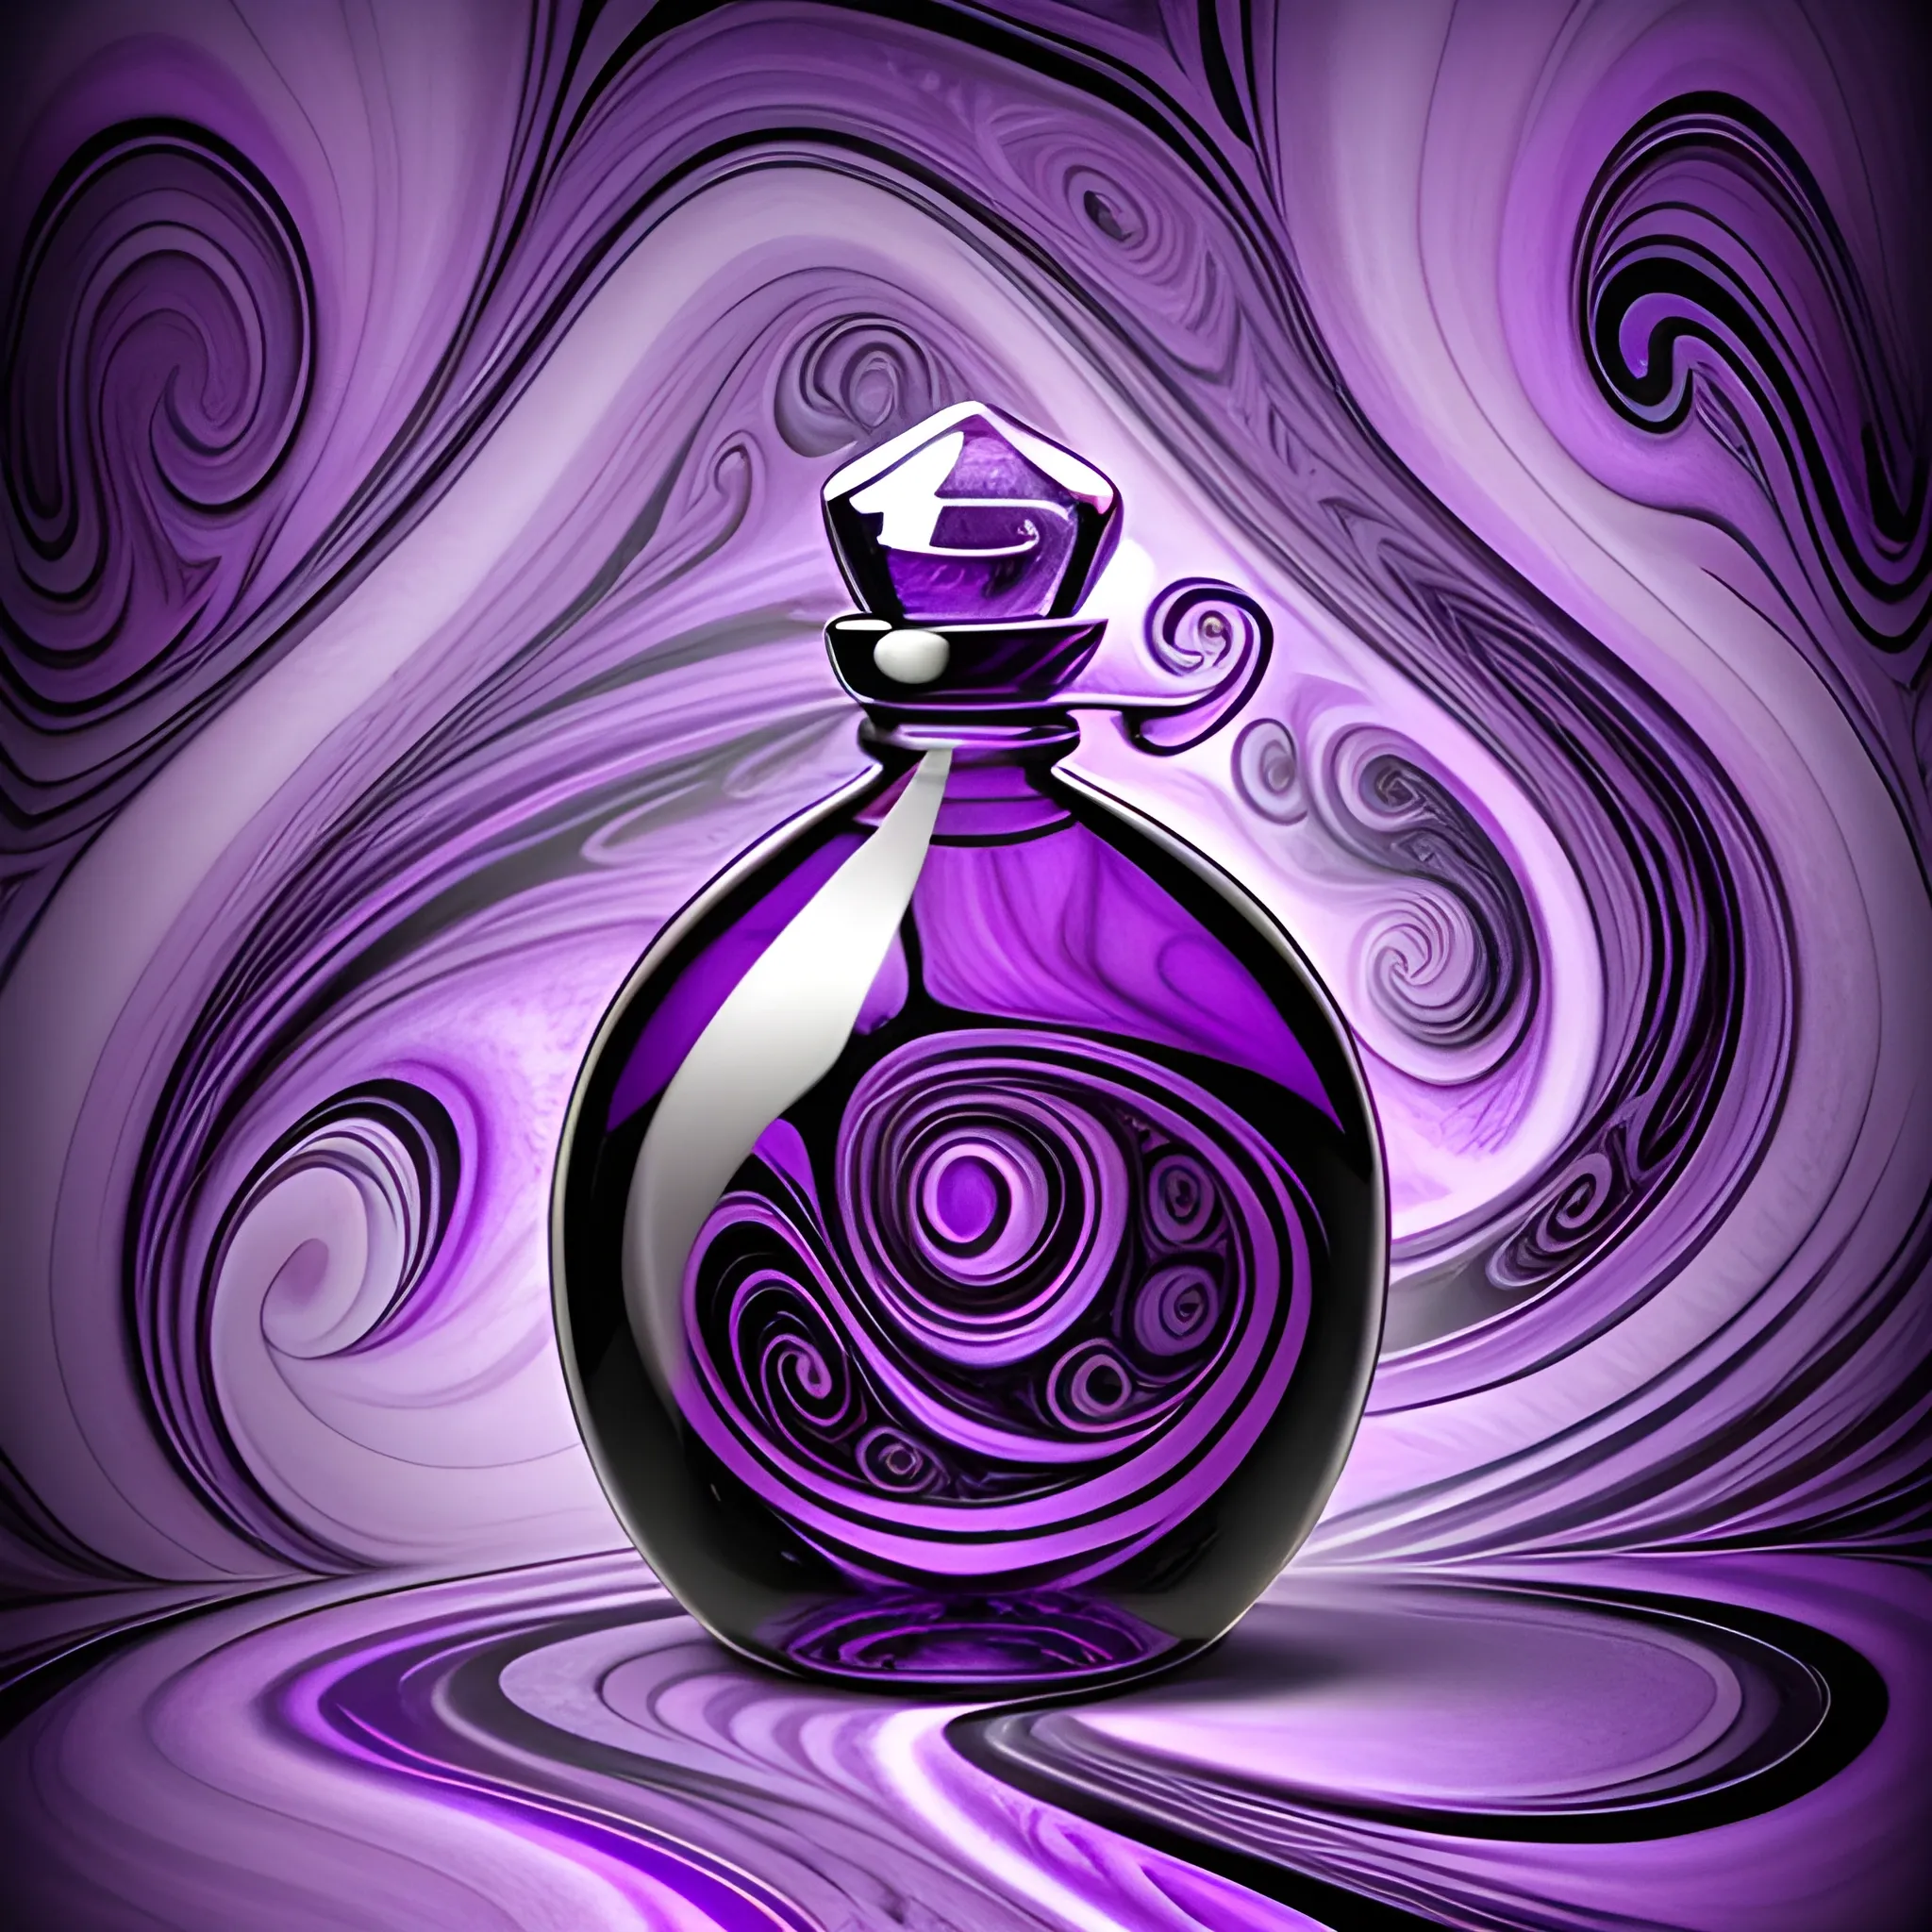 Potion bottle magic mysterious purple DnD mystery swirls MORE MYSTERIOUS purple swirl background crazy backgound

